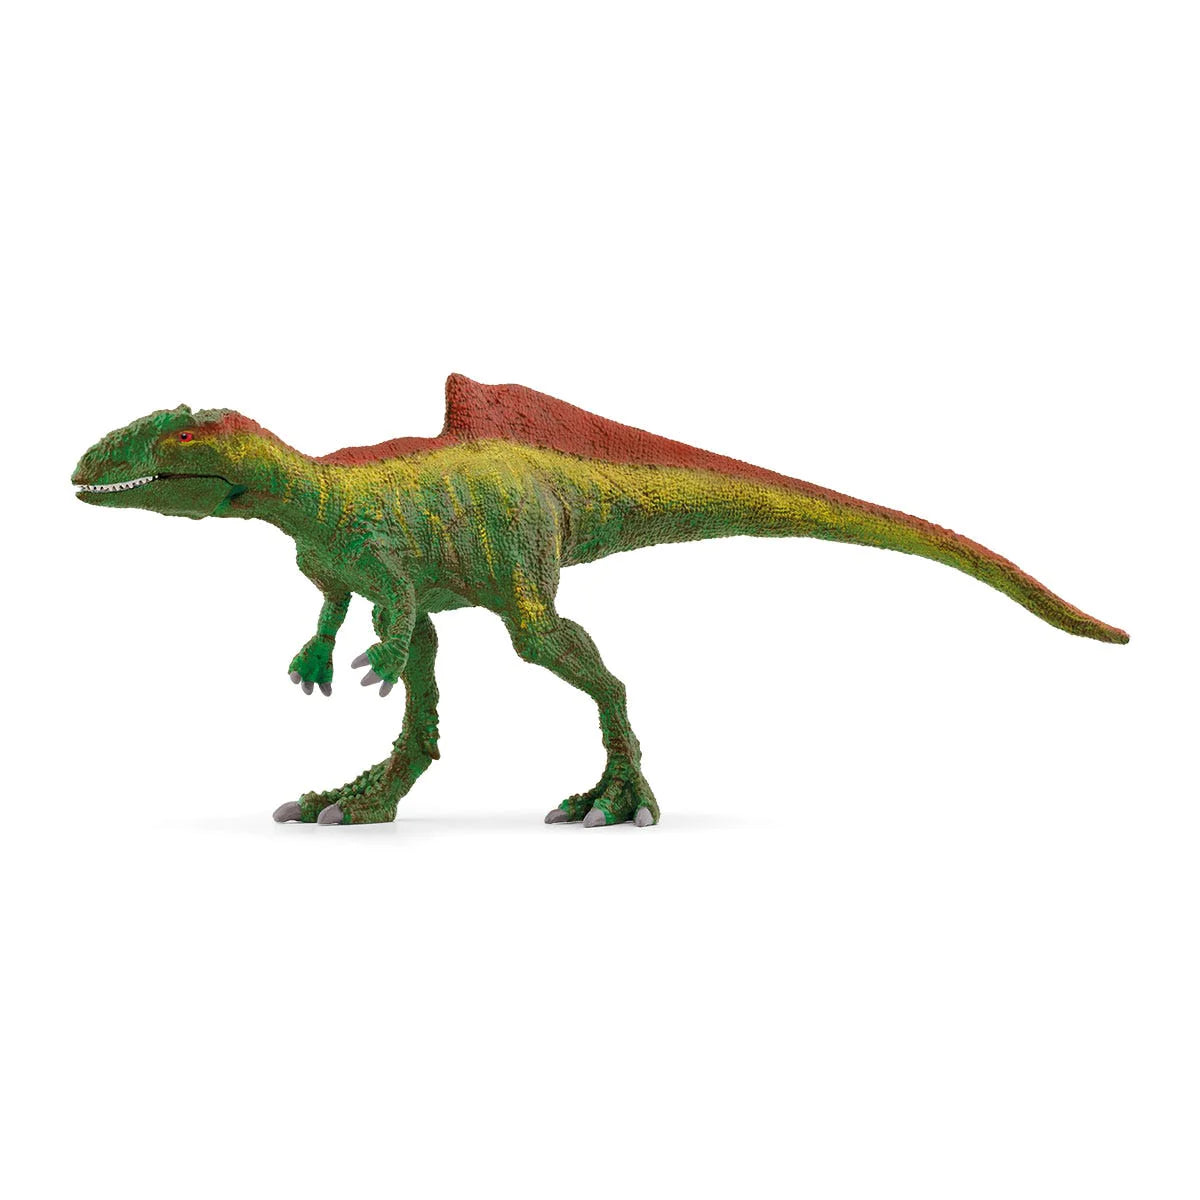 Schleich - Dinosaurs Concaventor